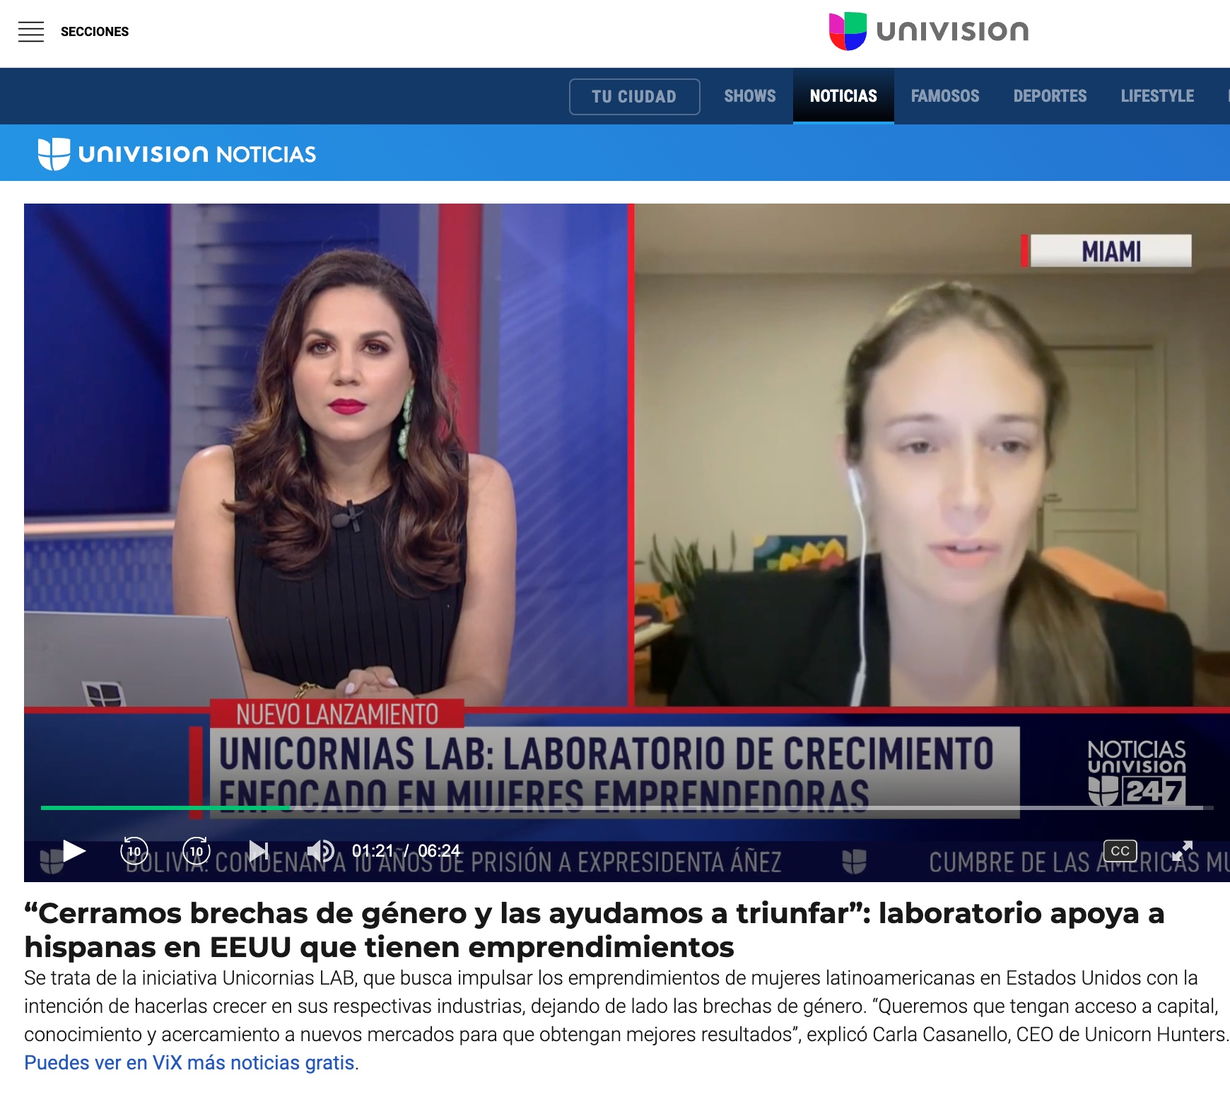 Univision report